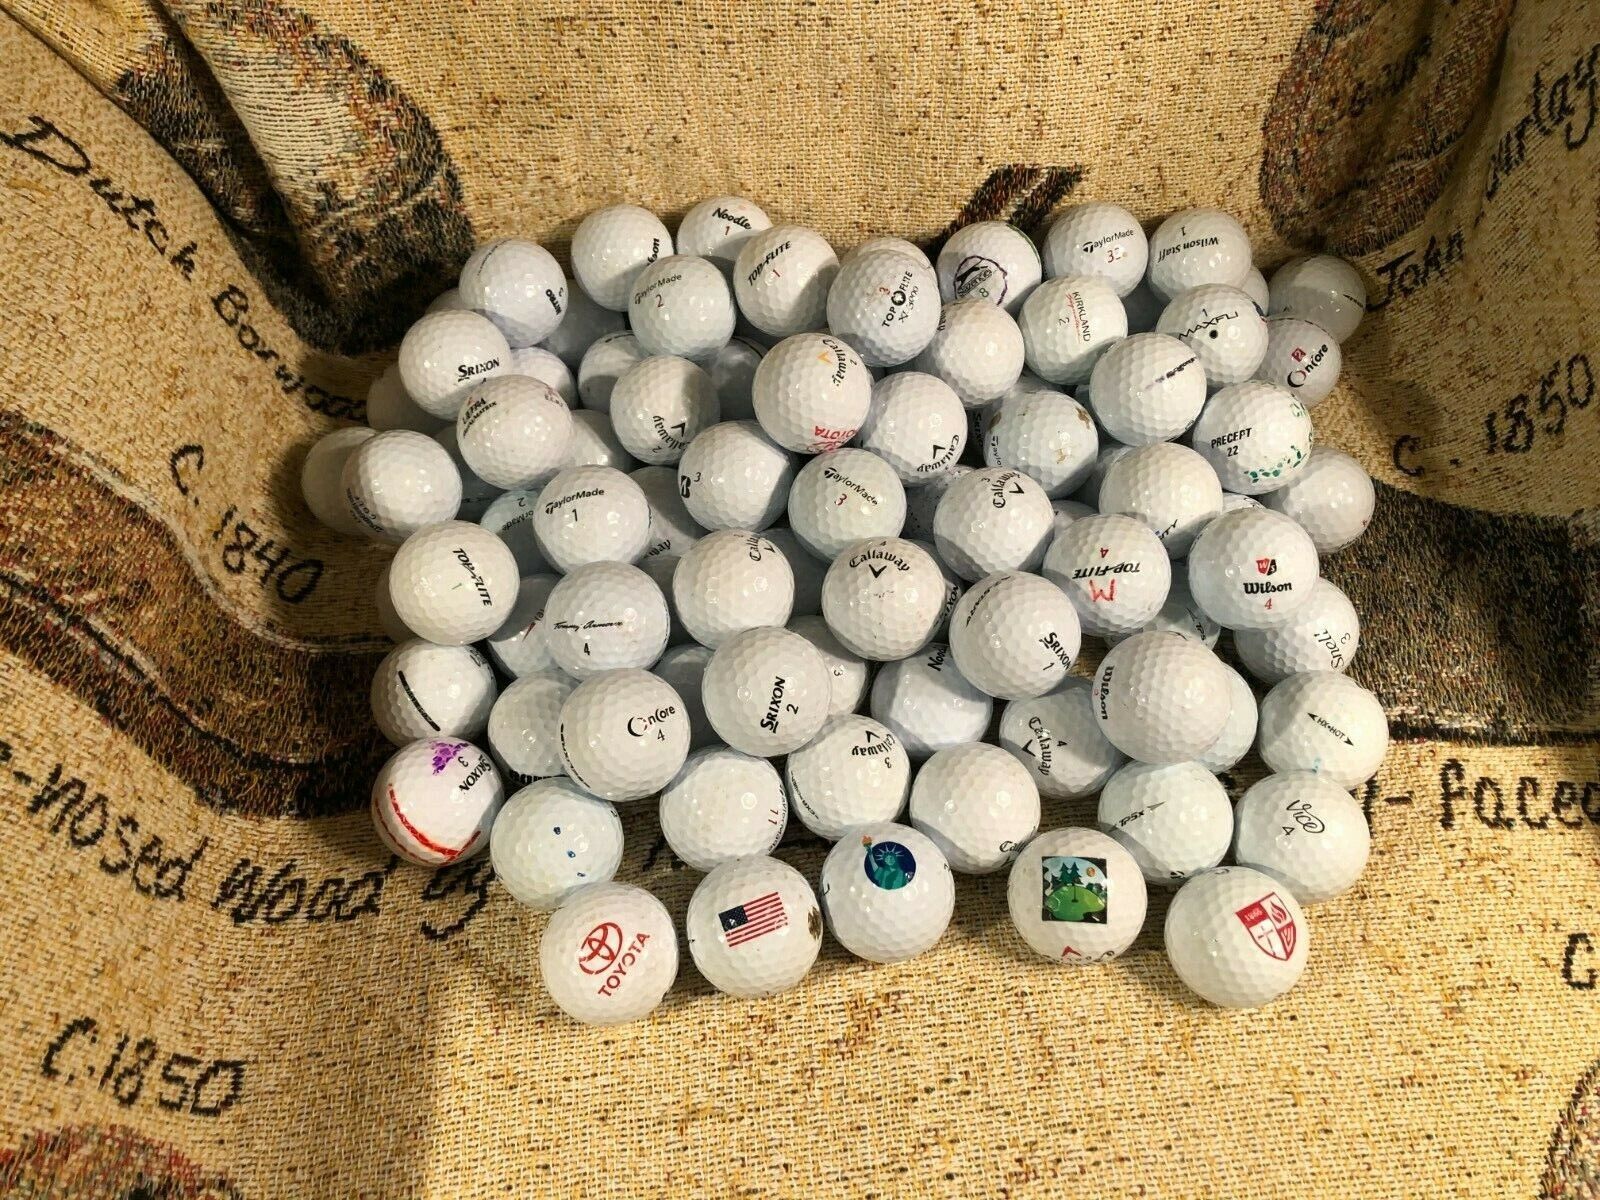 Callaway, Taylor Made, Srixon, Pinnacle, and Maxfli used AAAA Golf Balls (100)